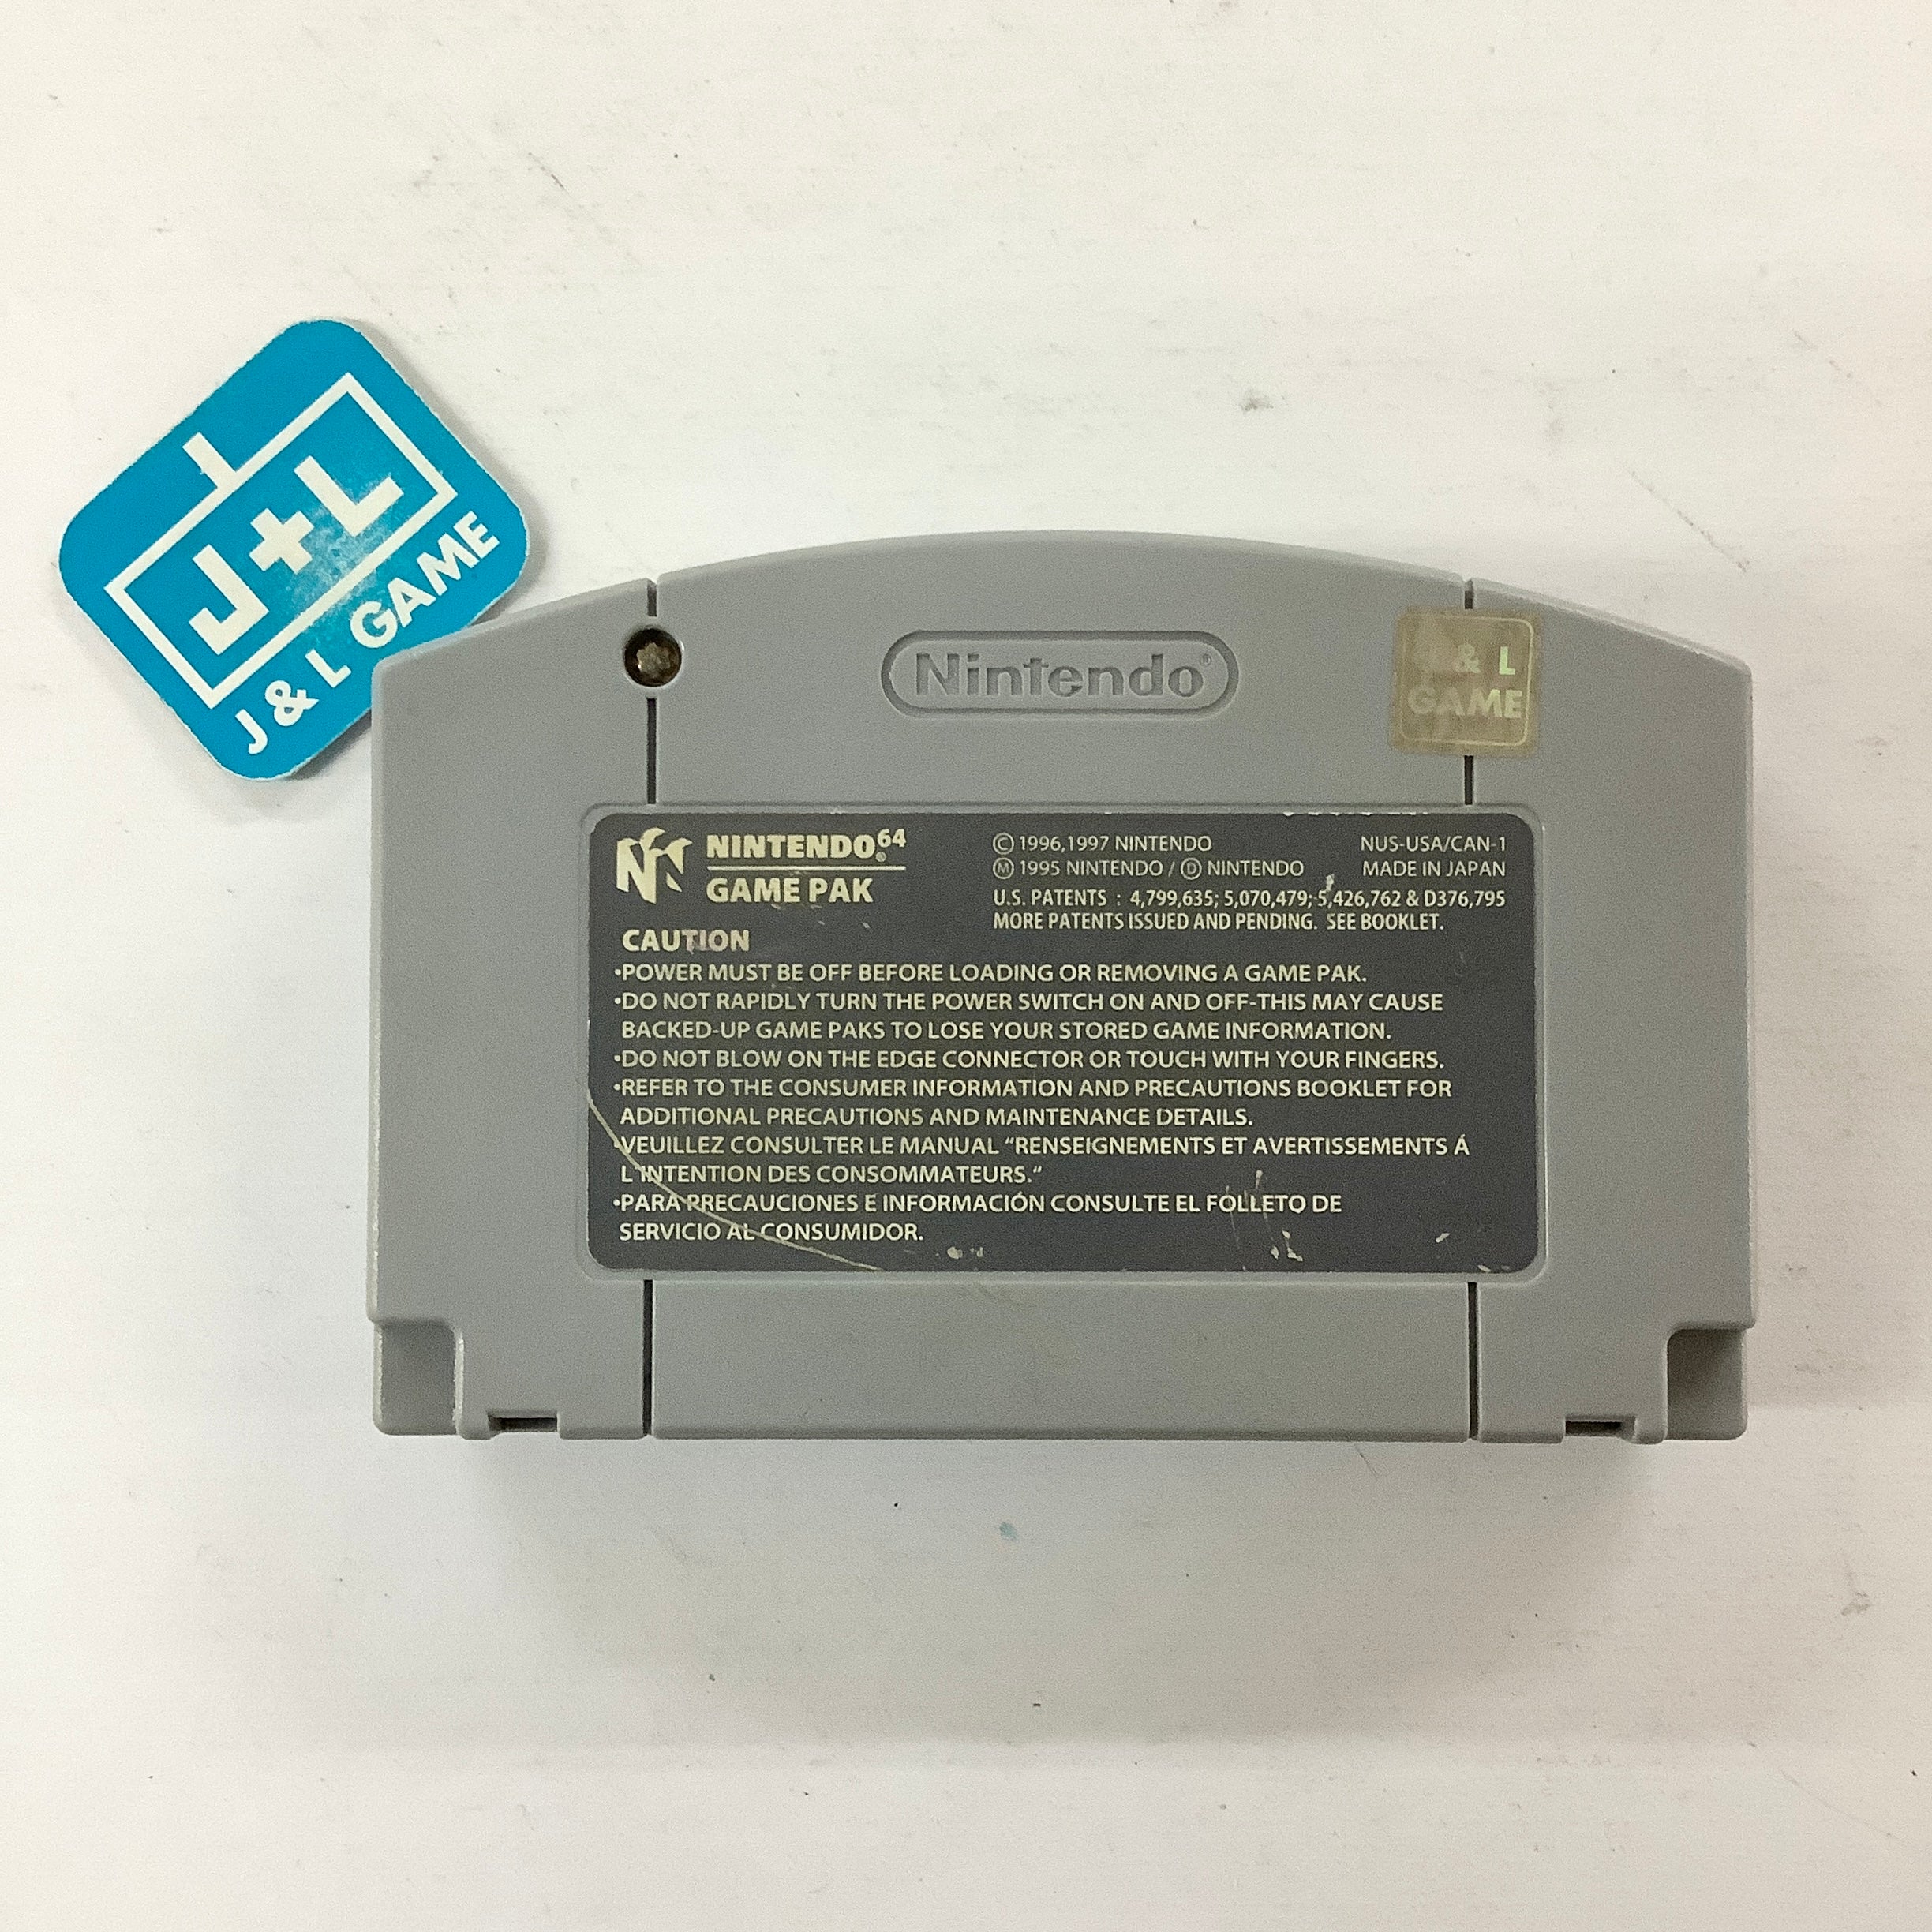 Fighters Destiny - (N64) Nintendo 64 [Pre-Owned] Video Games Ocean   